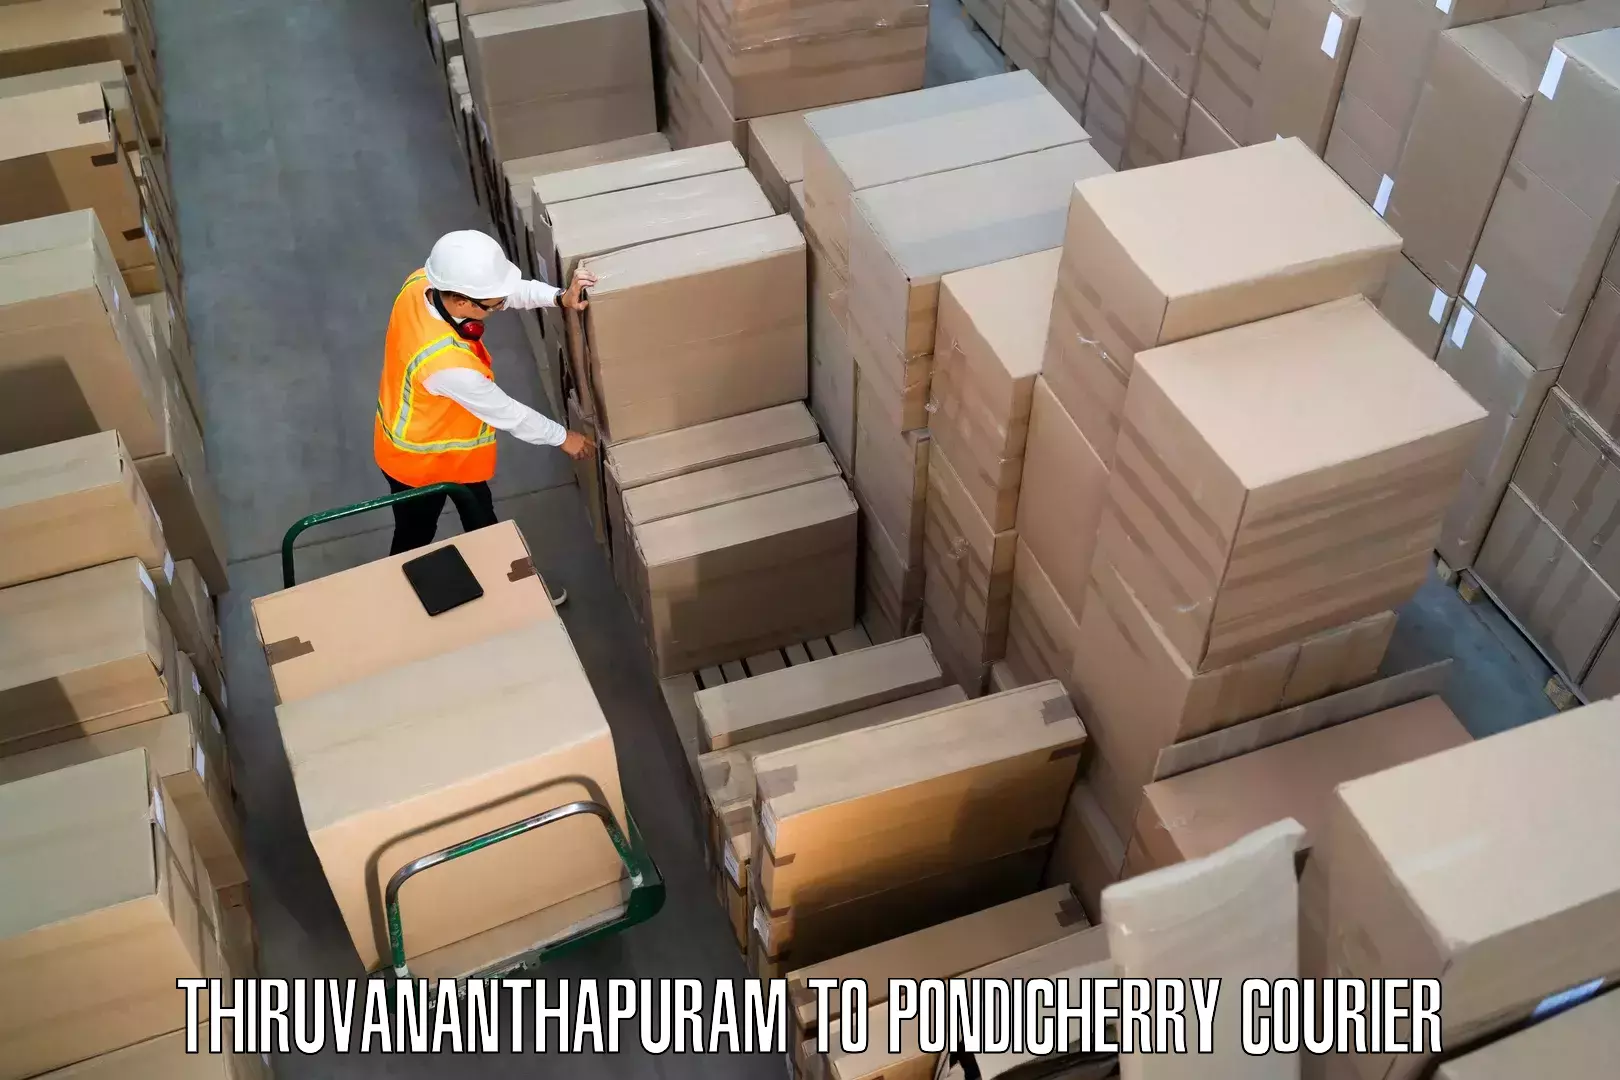 Professional movers and packers Thiruvananthapuram to Metttupalayam